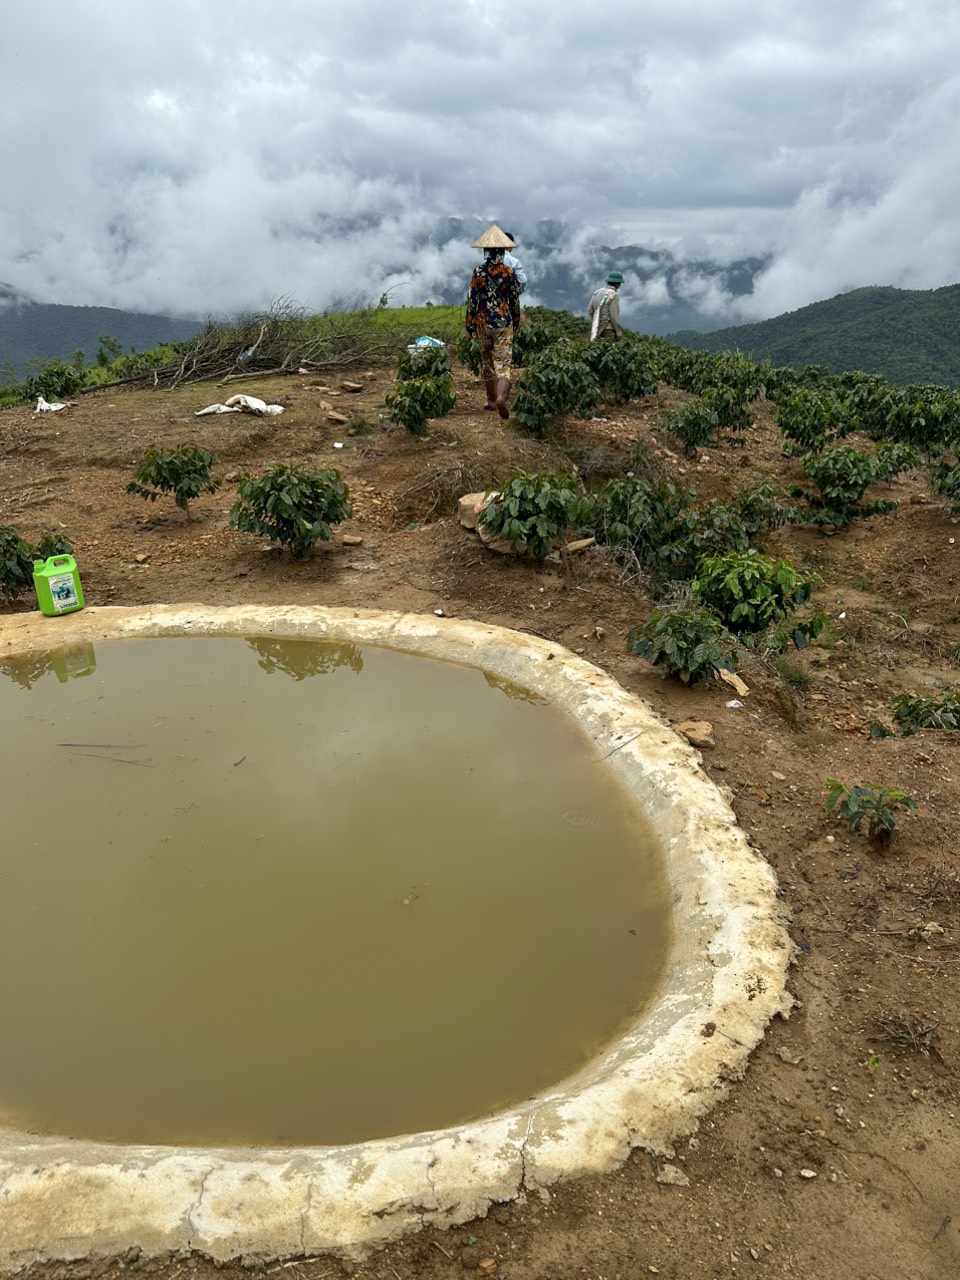 Các hộ dân bản Cá đã thực hiện đào hố, xây bể trên các nương cao để trữ nước, đảm bảo nguồn nước tưới cho cây mắc ca và cây cà phê.